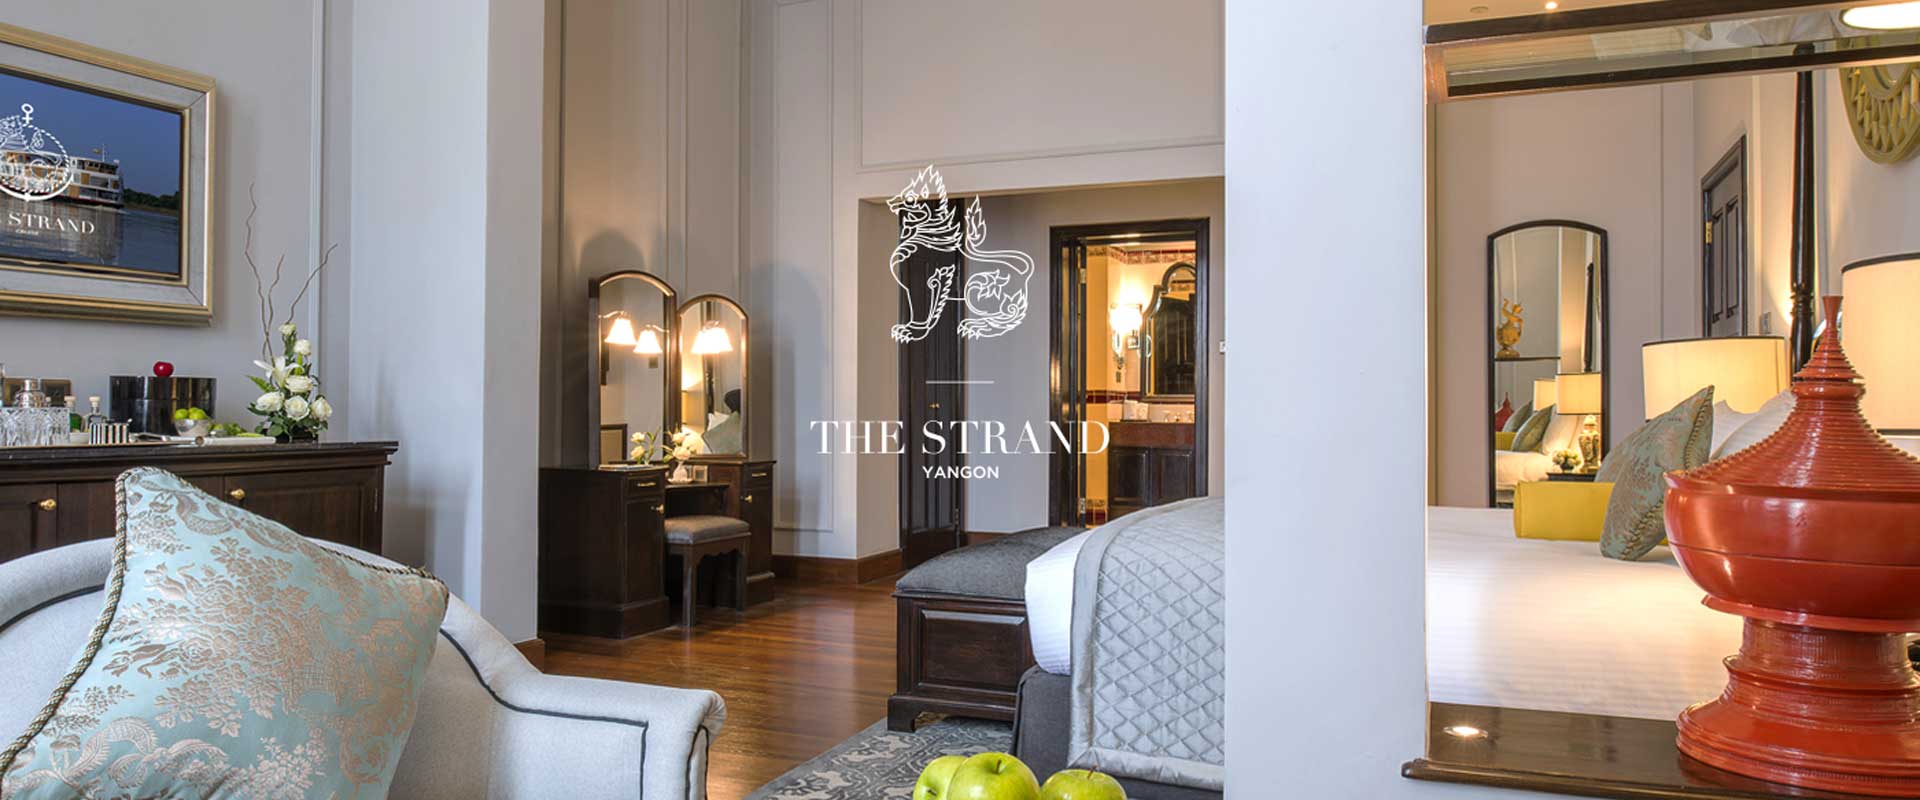 The Strand โรงแรมที่หรูหราเก่าแก่ที่สุดของพม่า กลับมาเปิดบริการอีกครั้ง